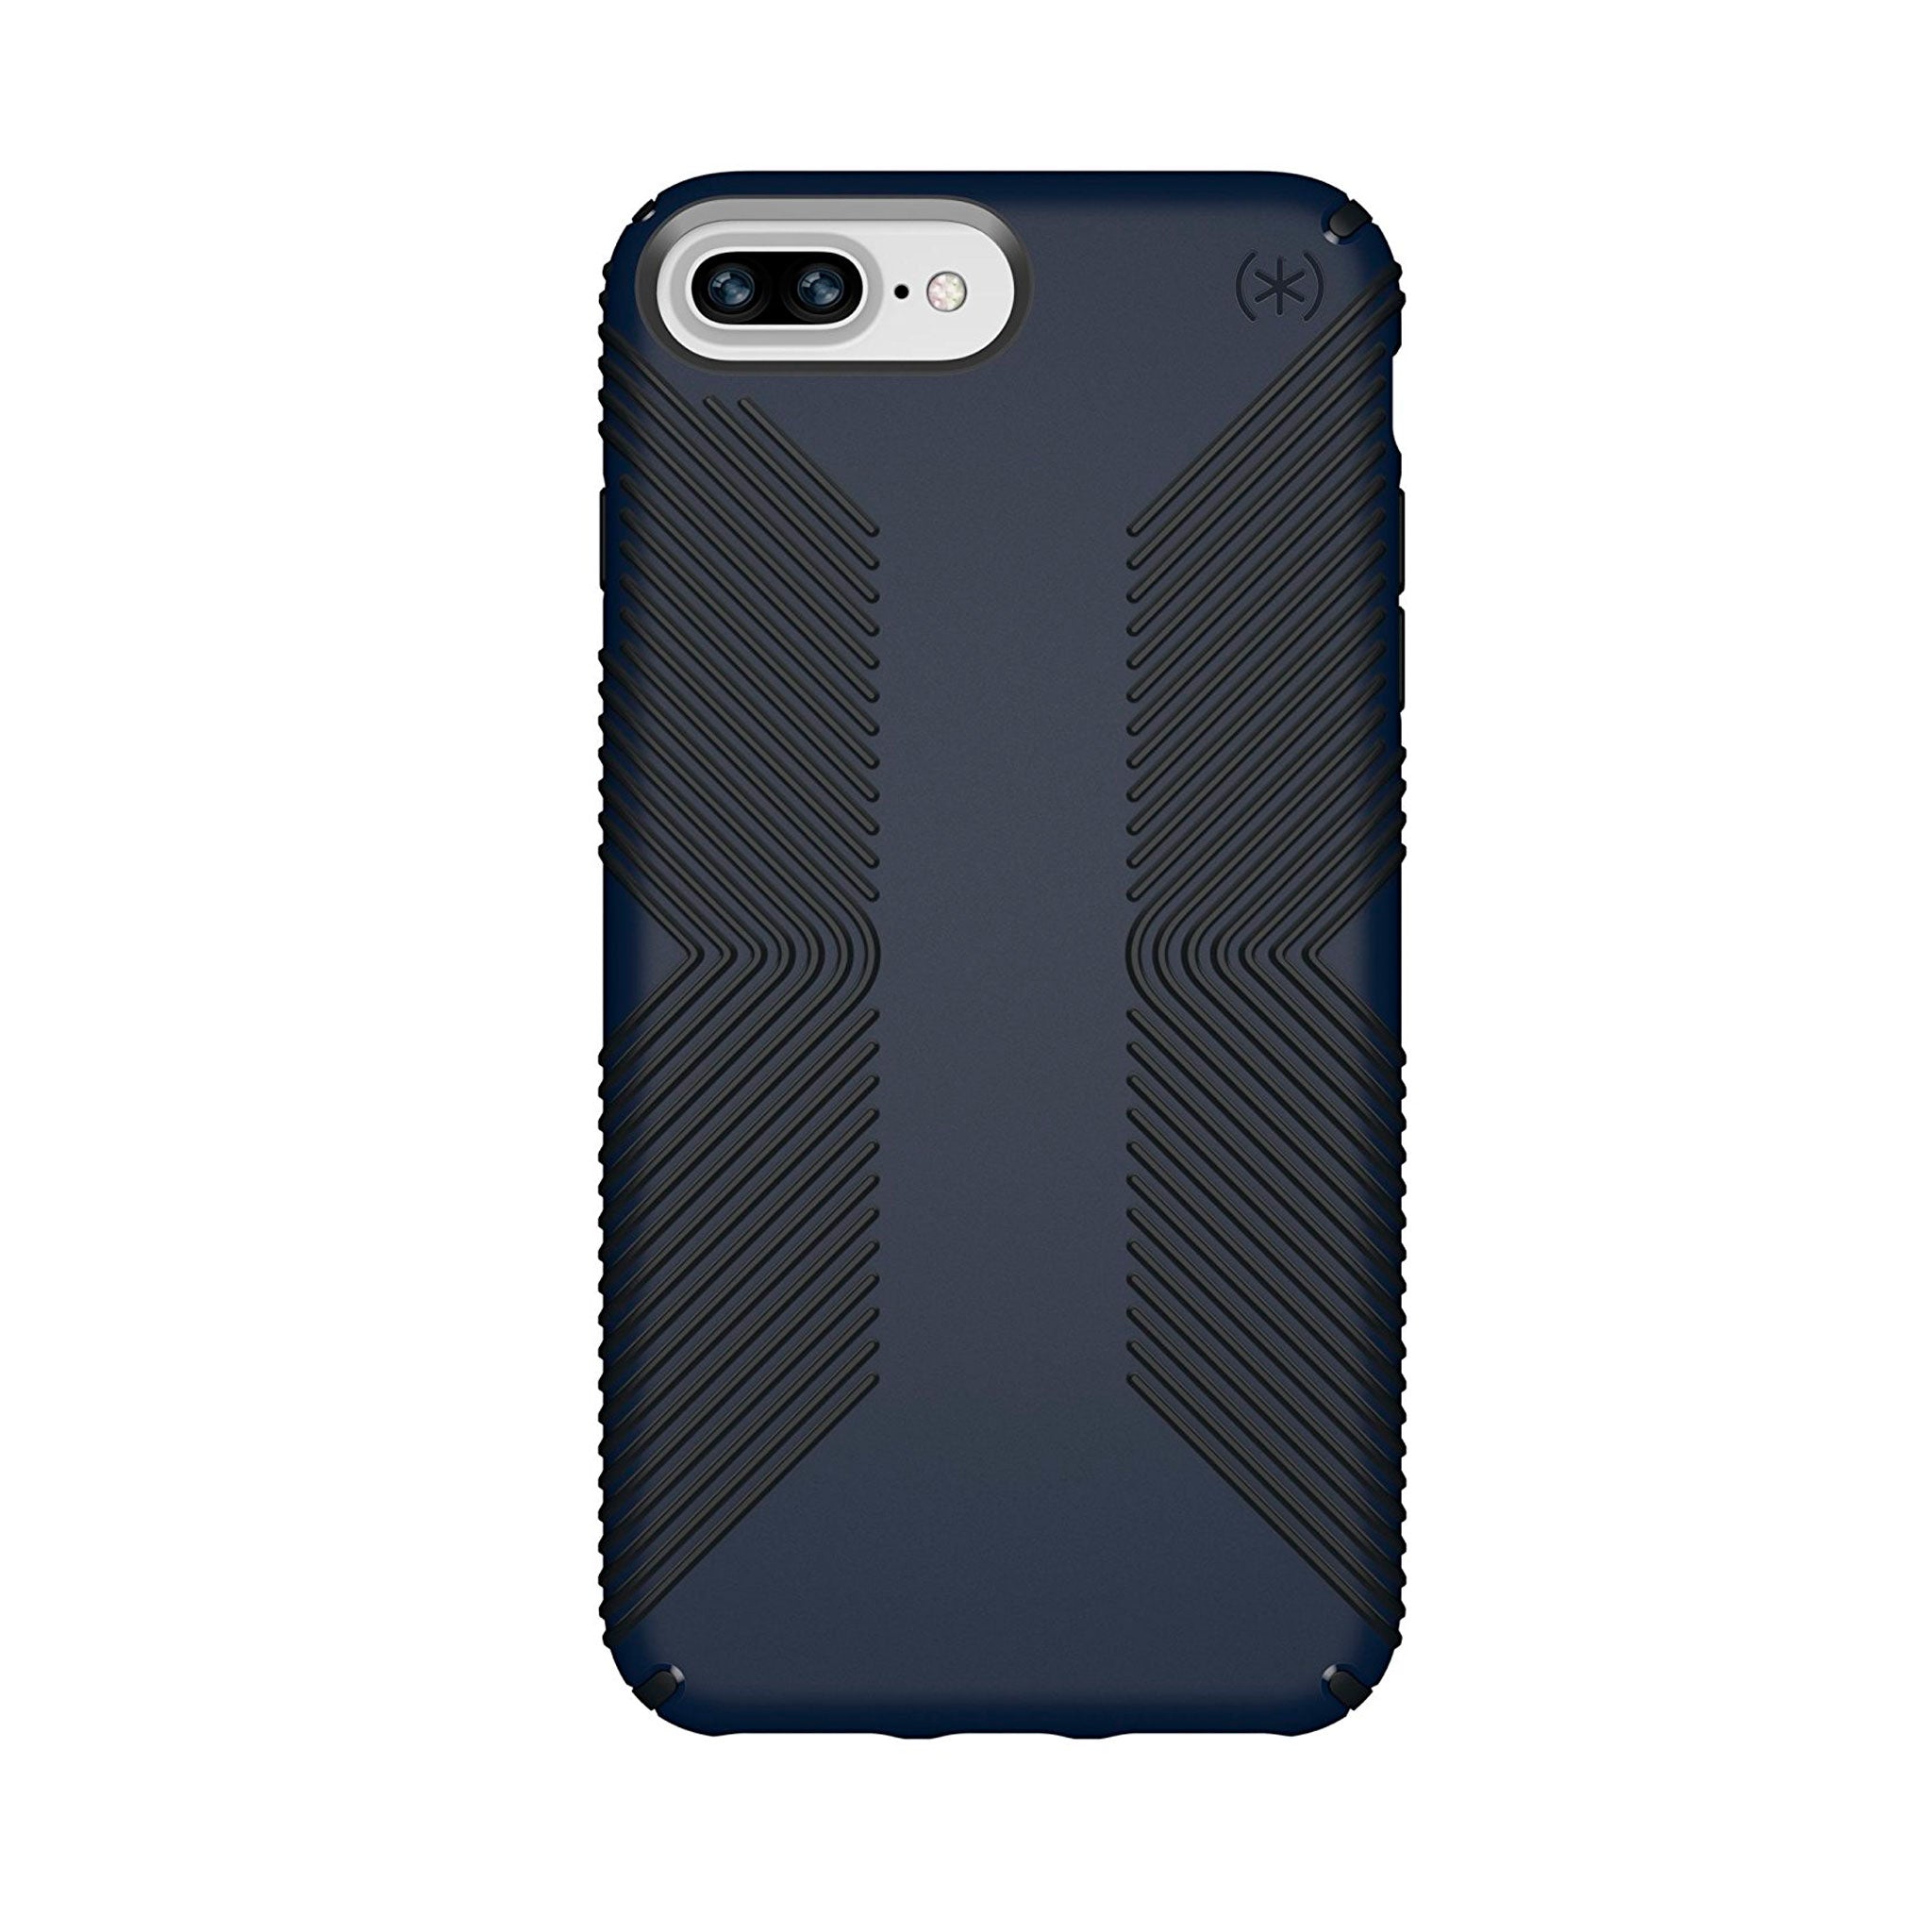 Speck - Presidio Grip Case For Apple Iphone 8 Plus / 7 Plus / 6s Plus / 6 Plus - Eclipse Blue And Carbon Black